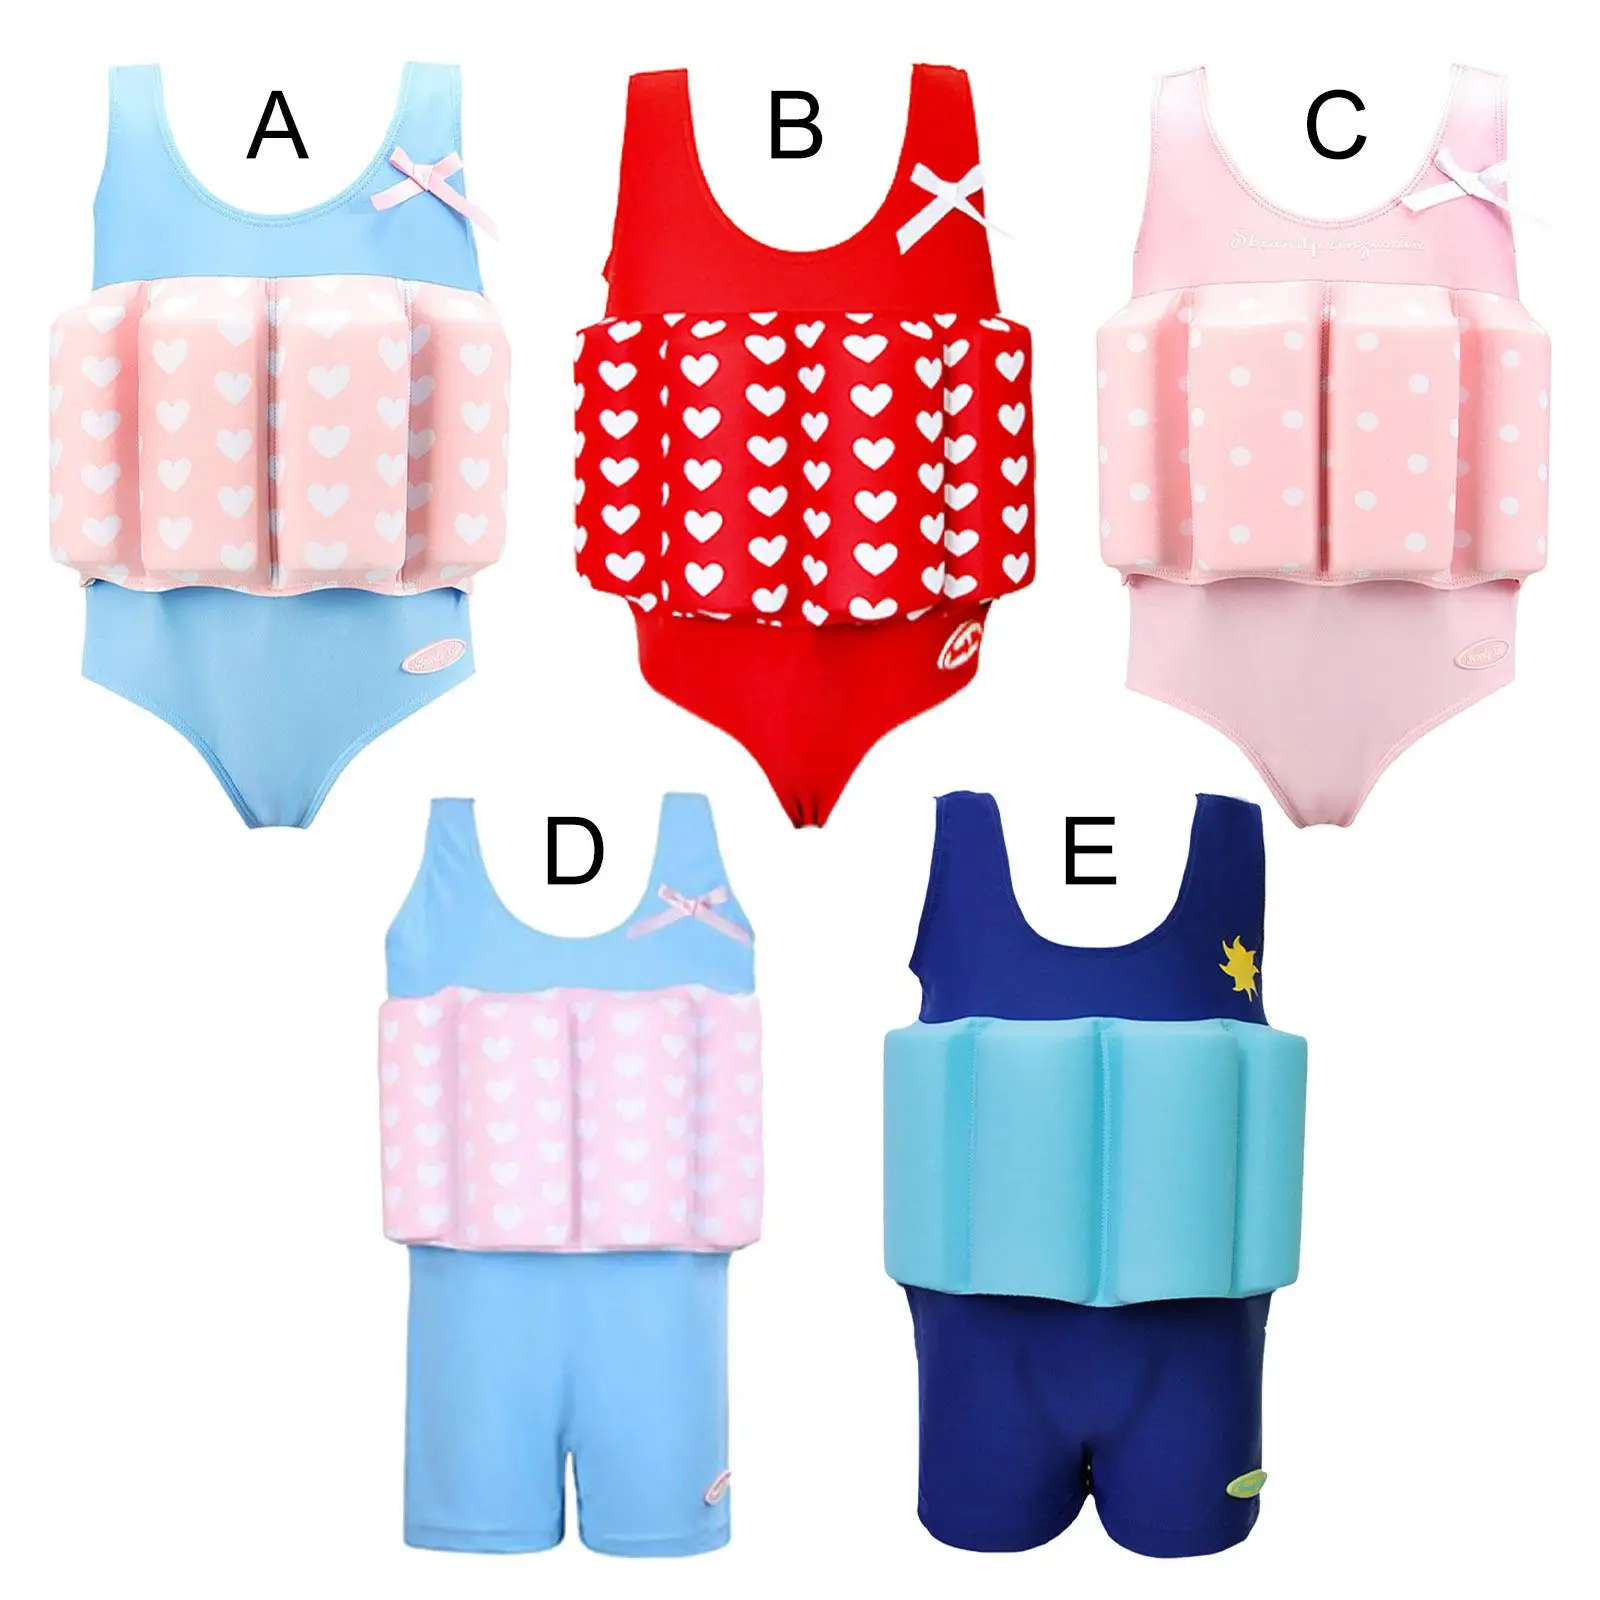 Floatation Swimsuits Buoyancy Adjustable Safety Waistcoat Training Swim Suit